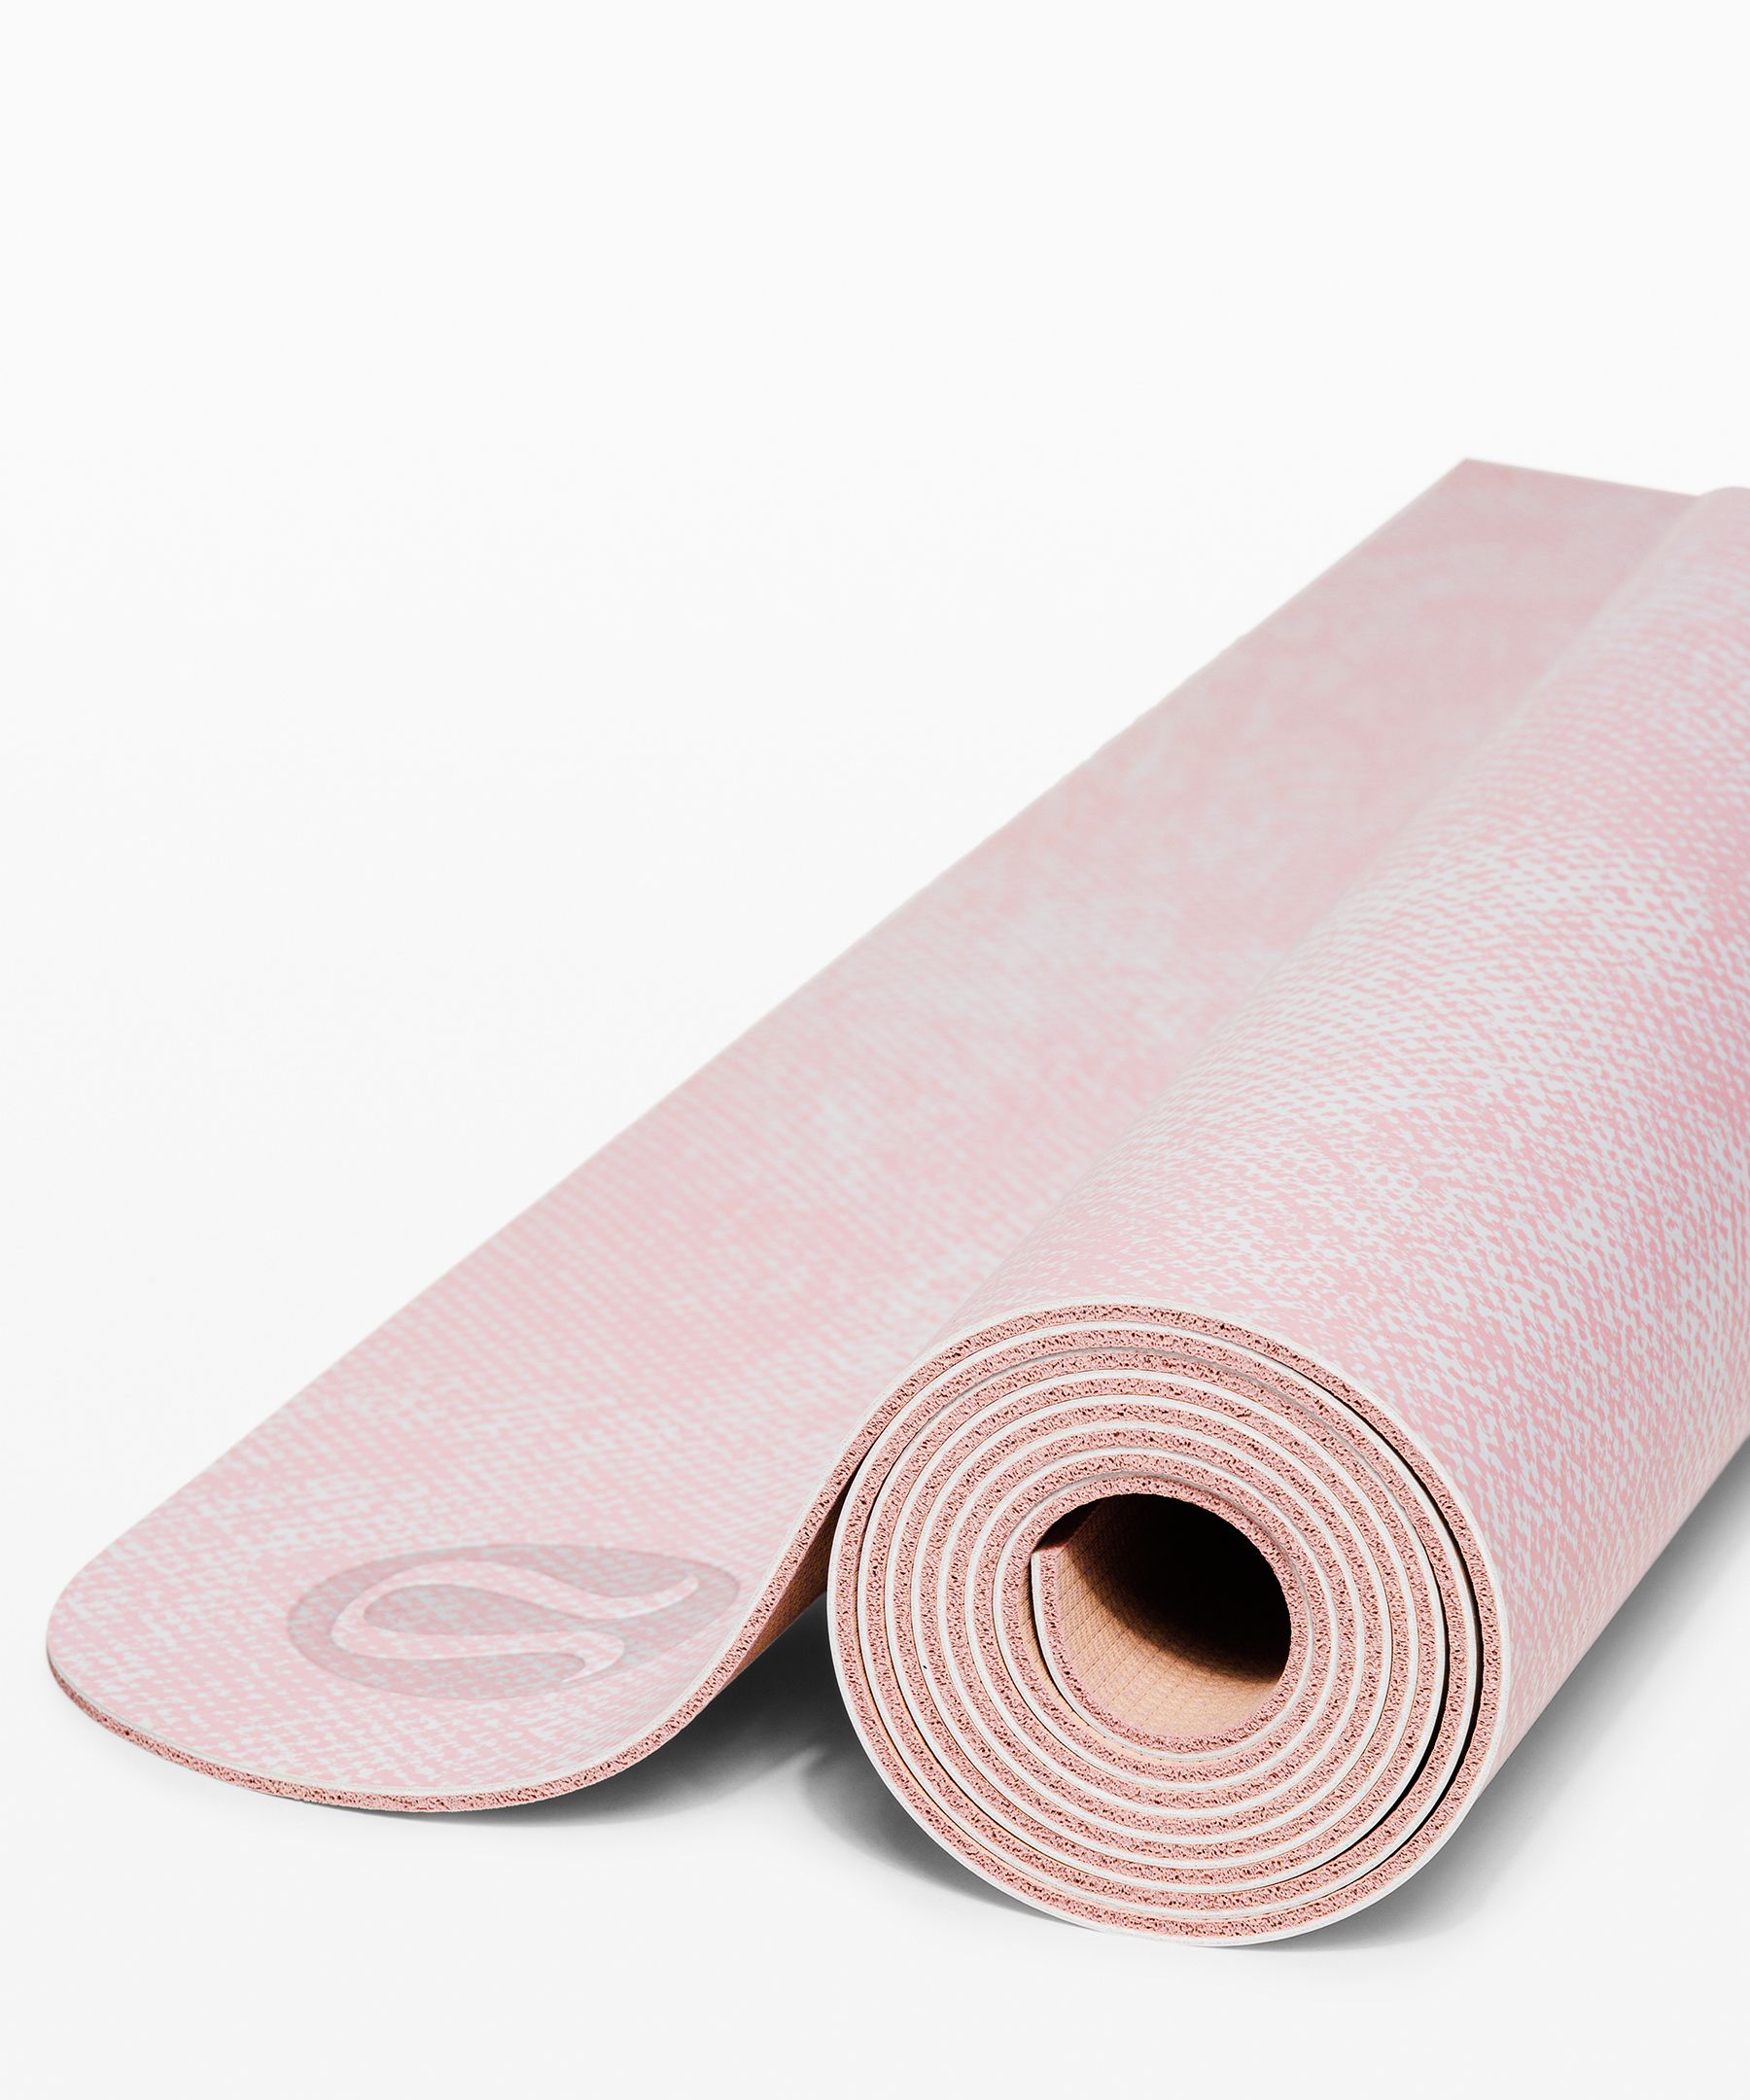 lululemon large yoga mat